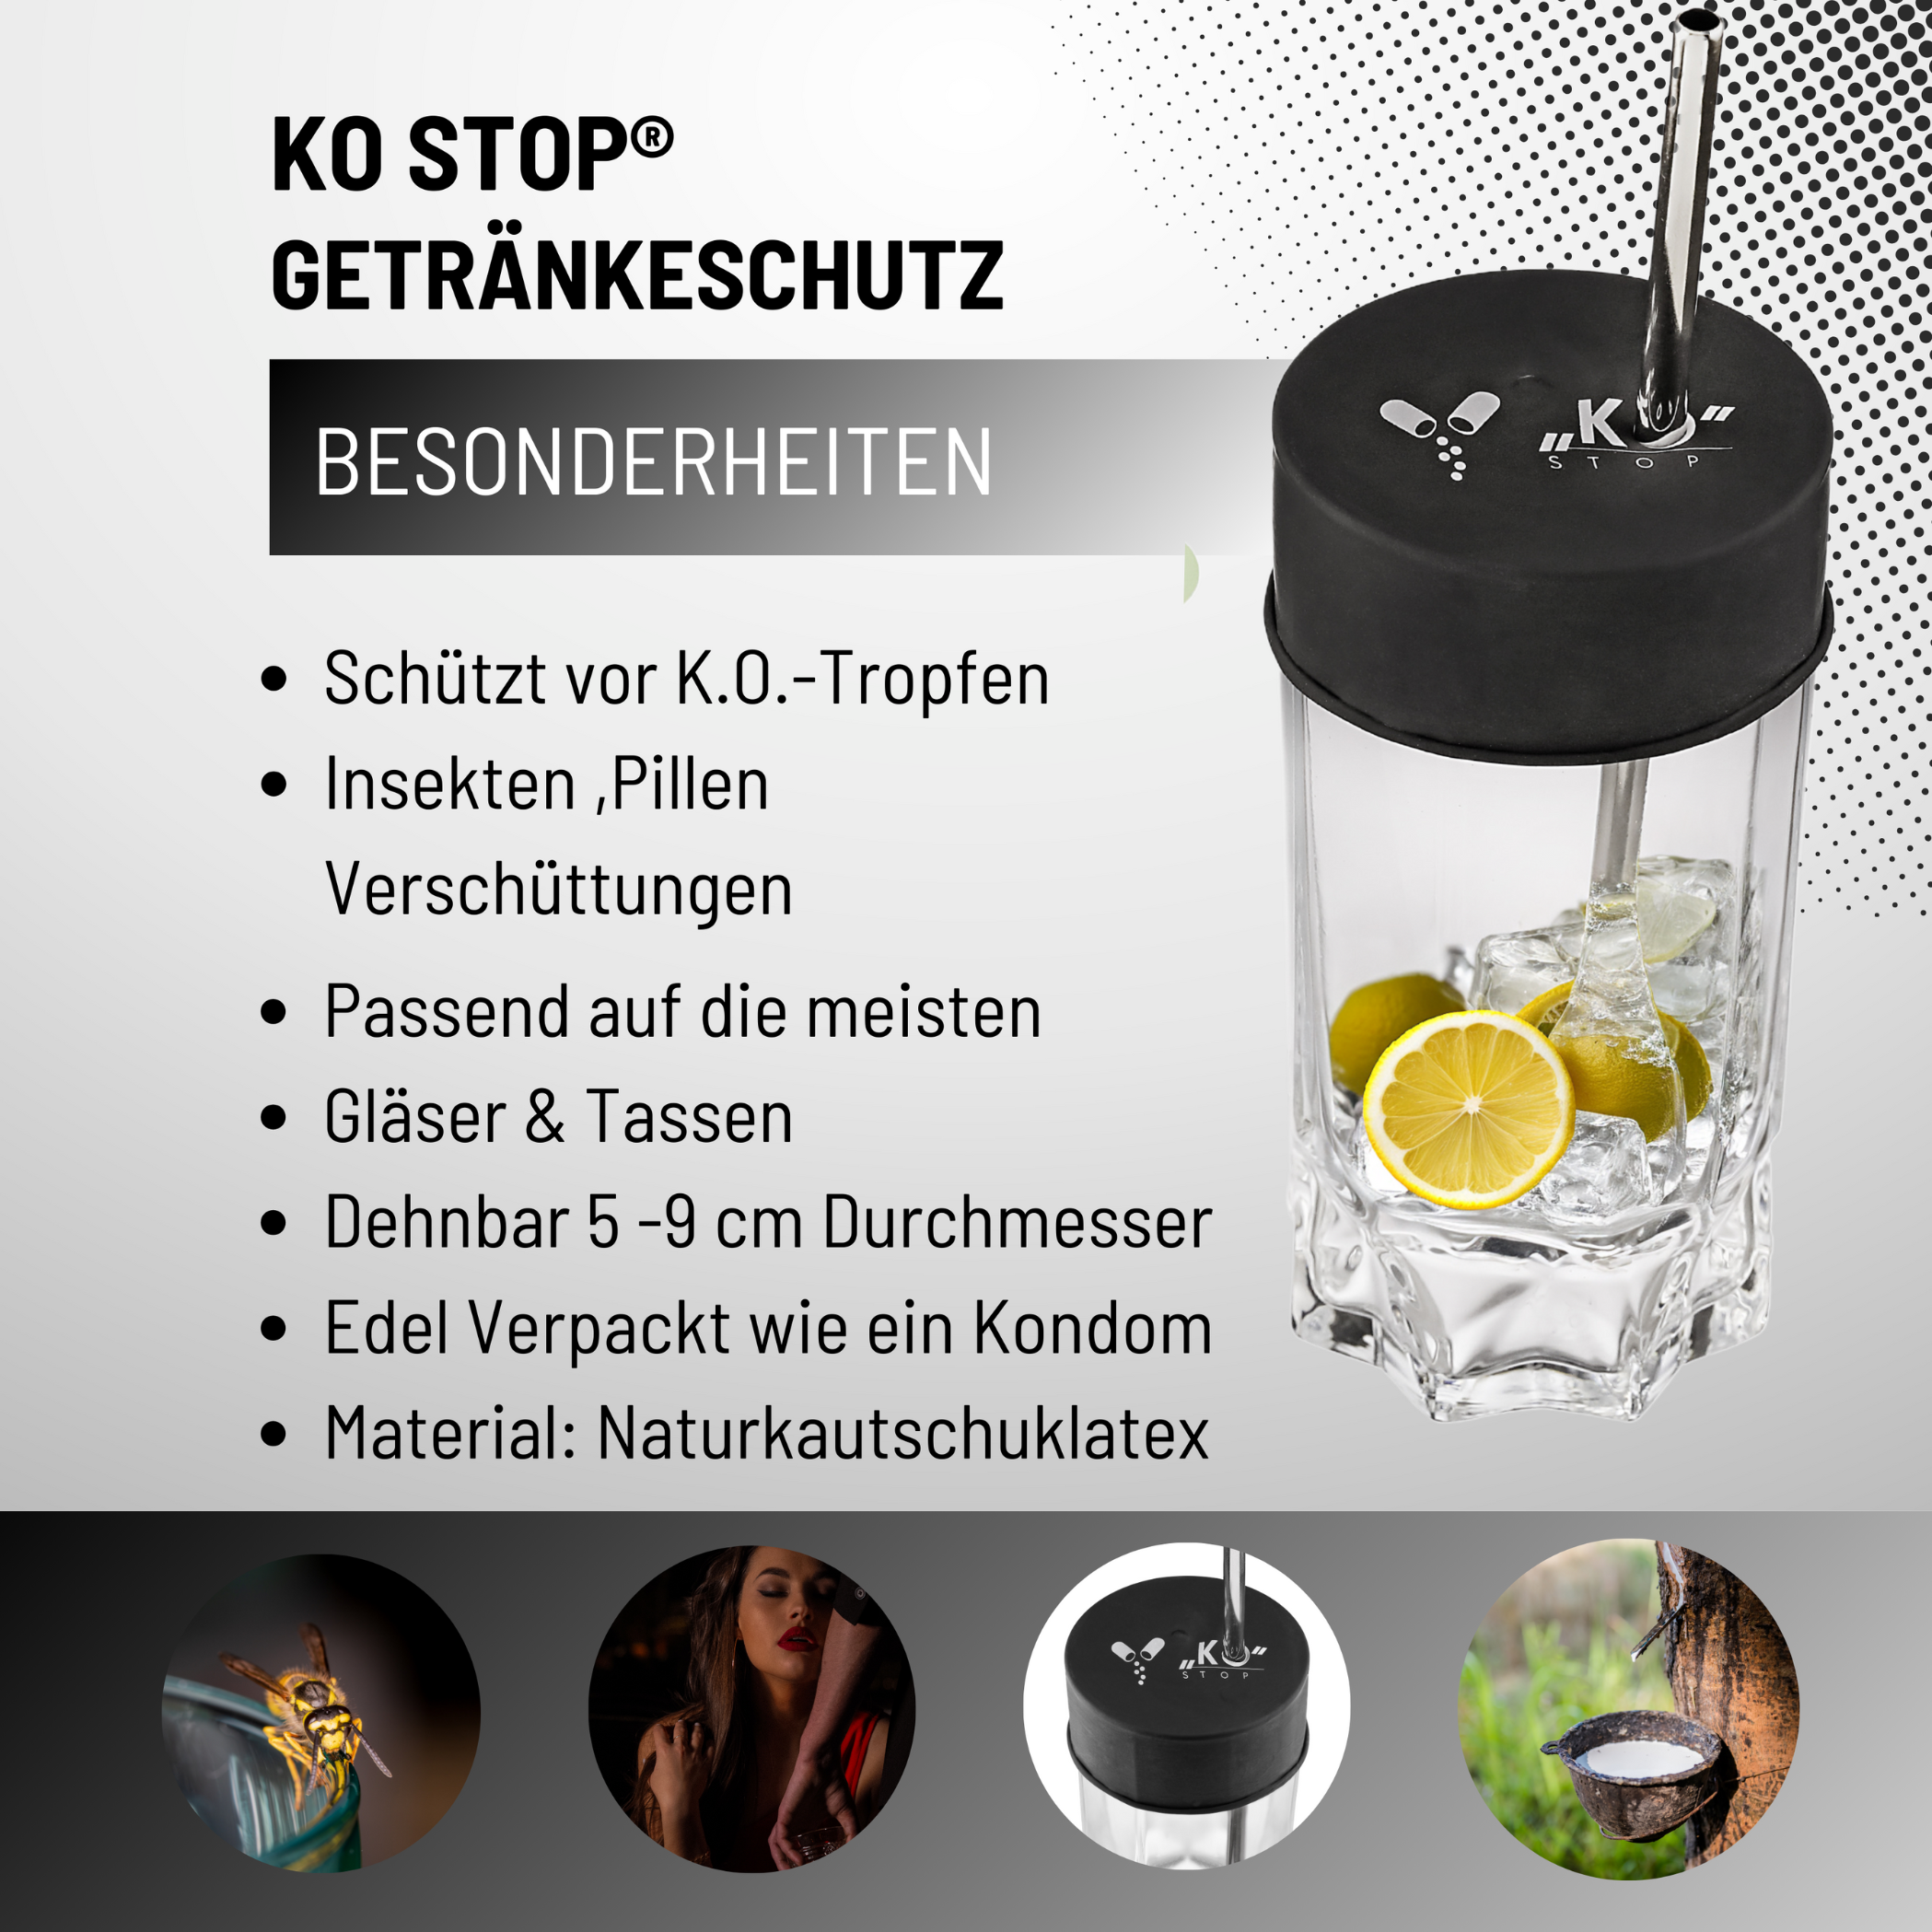 KO Stop® Natürlicher Getränkeschutz gegen K.o. Tropfen, Insekten und Verschüttungen